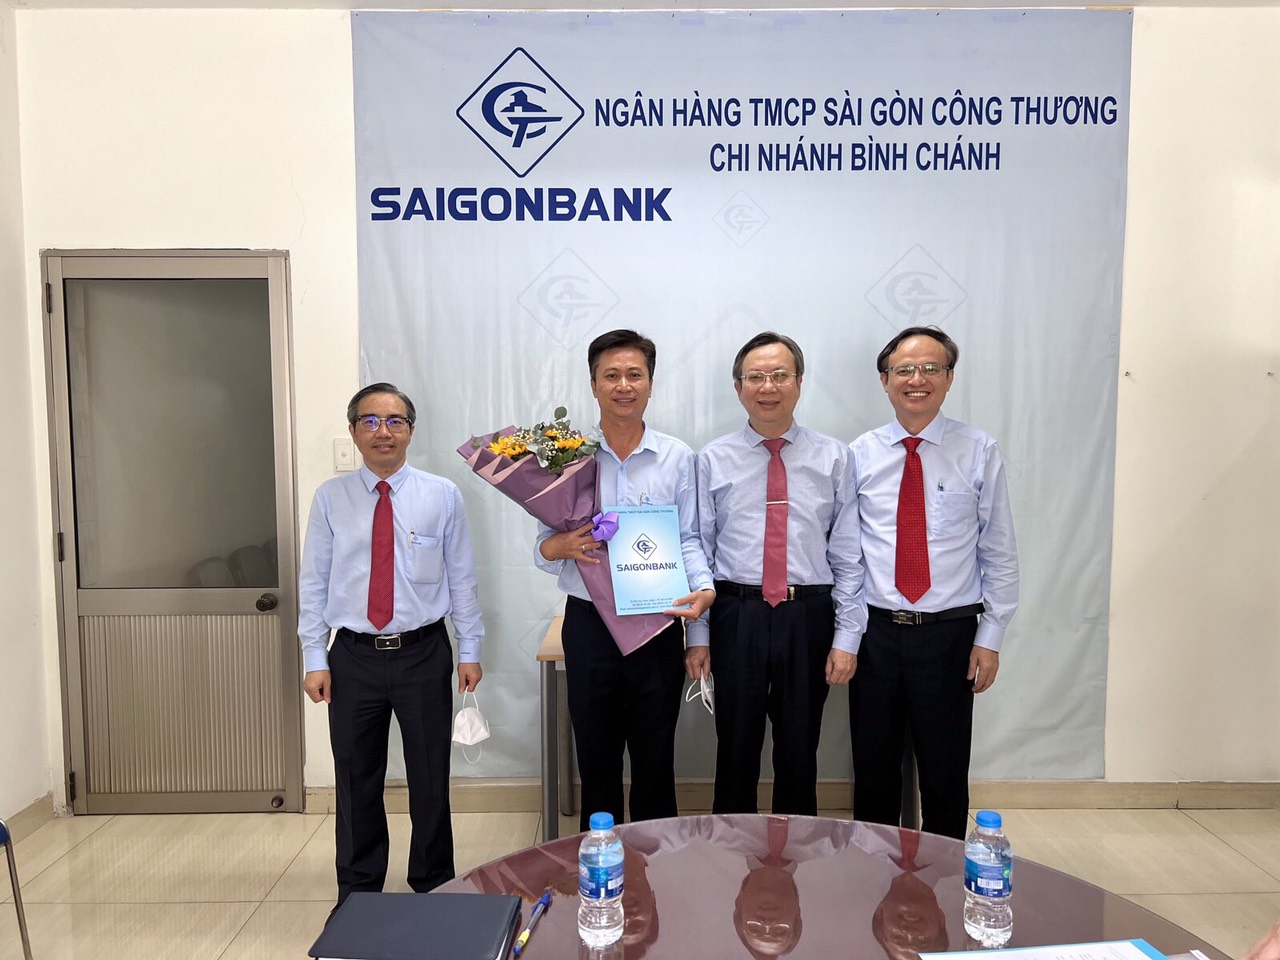 Ngân hàng TMCP Sài Gòn Công thương công bố quyết định bổ nhiệm nhân sự CN Bình Chánh